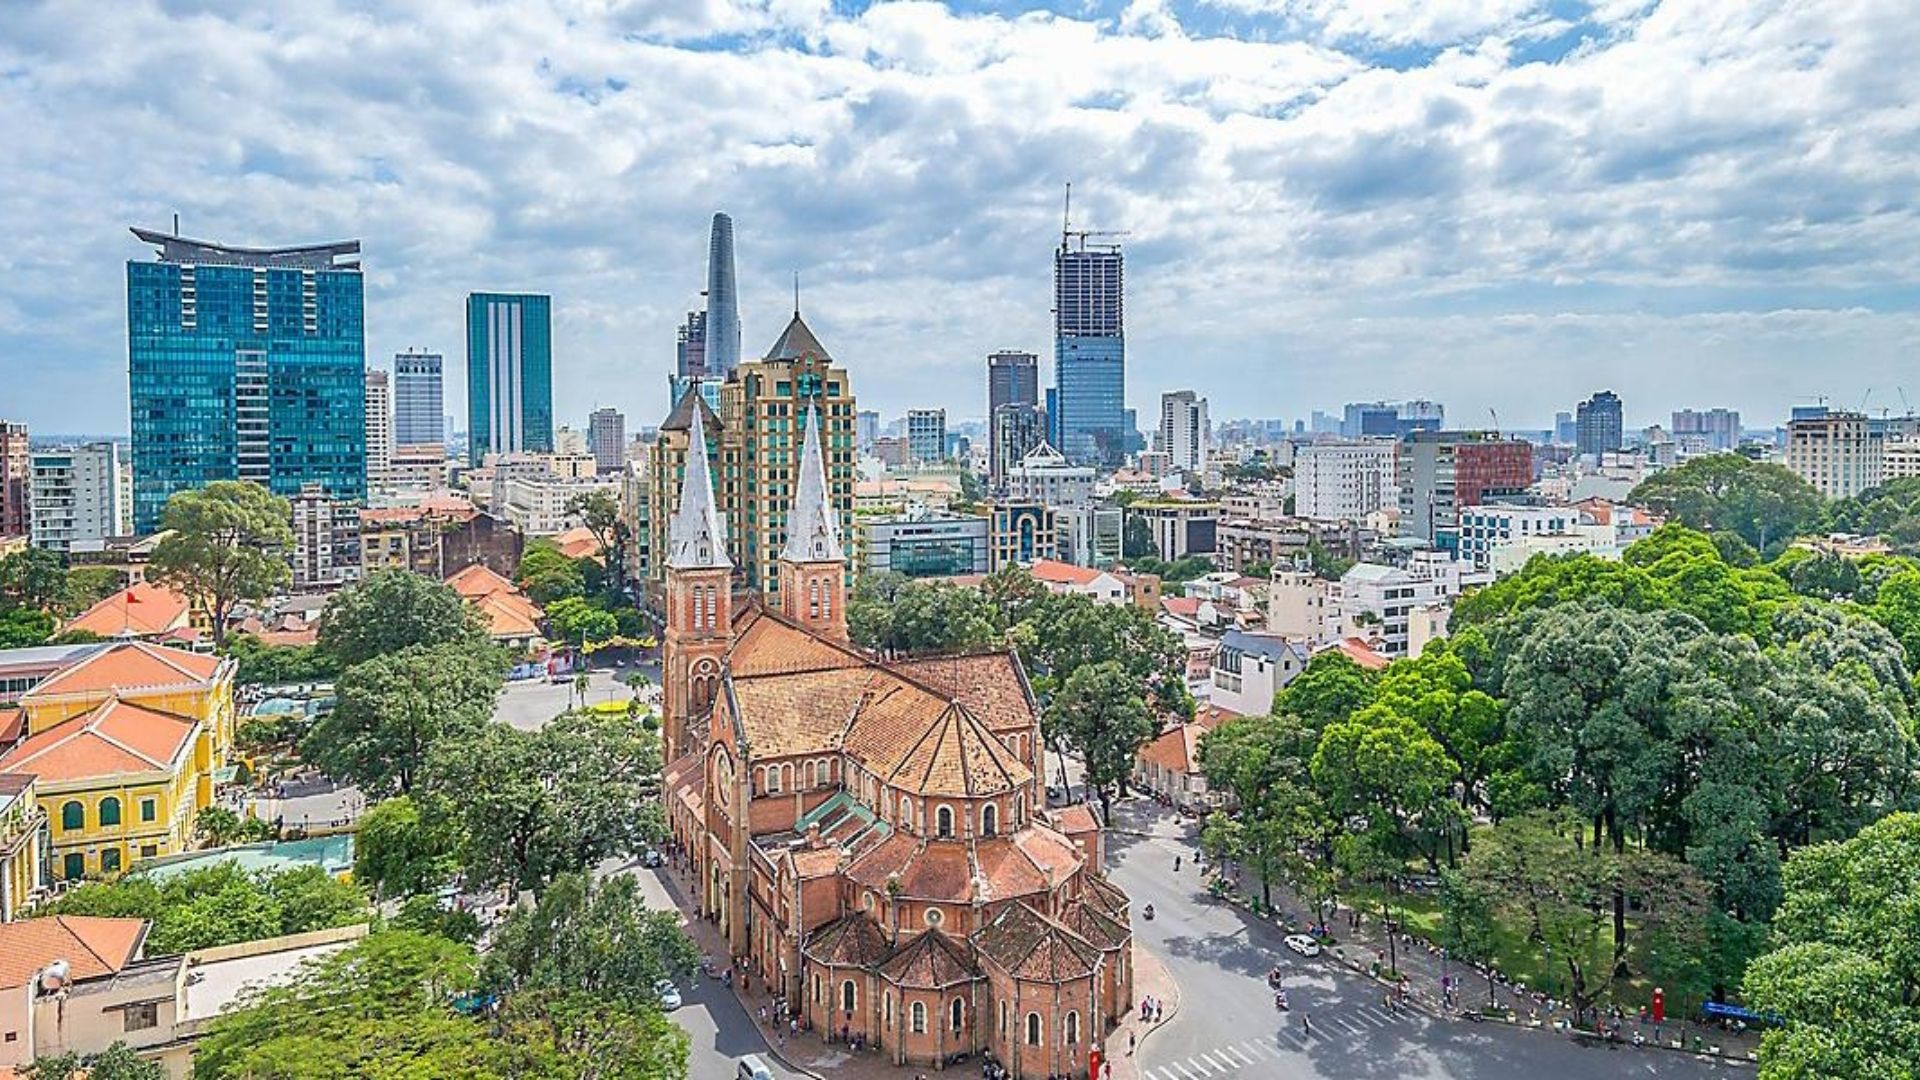 Ciudad de Ho Chi Minh (Phu My), Vietnam